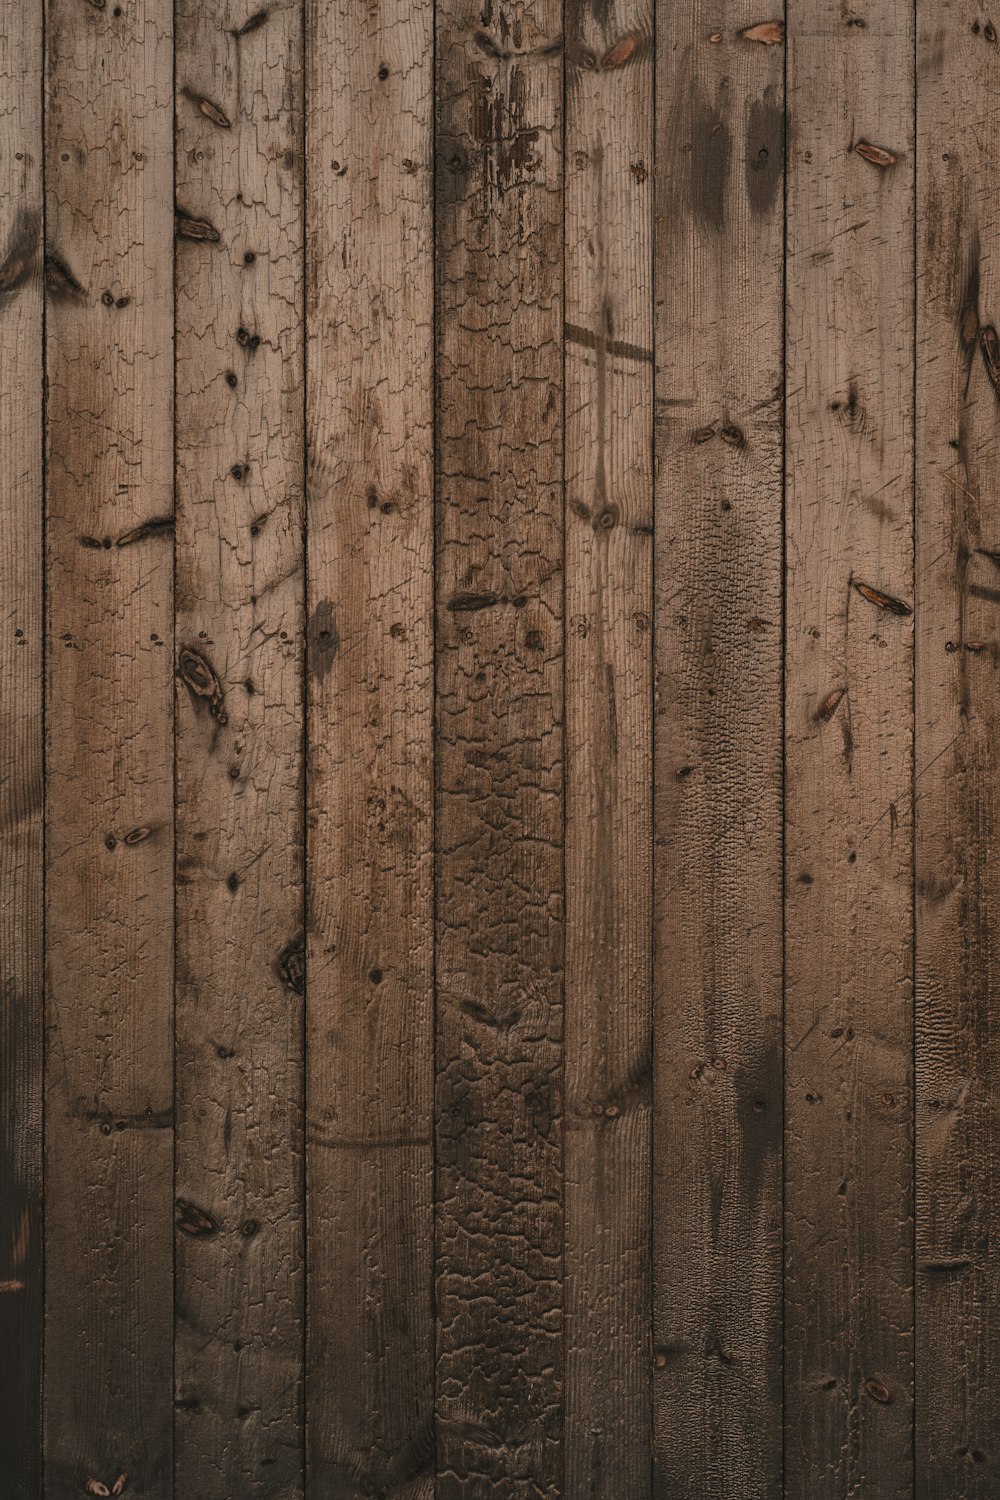 Vải gỗ là một trong những vật liệu trang trí độc đáo và đầy phong cách. Đối với những ai yêu thích phong cách thiên nhiên, vải gỗ chắc chắn sẽ được yêu thích. Hãy xem ngay những hình ảnh liên quan để cùng khám phá vẻ đẹp độc đáo của vải gỗ nhé!